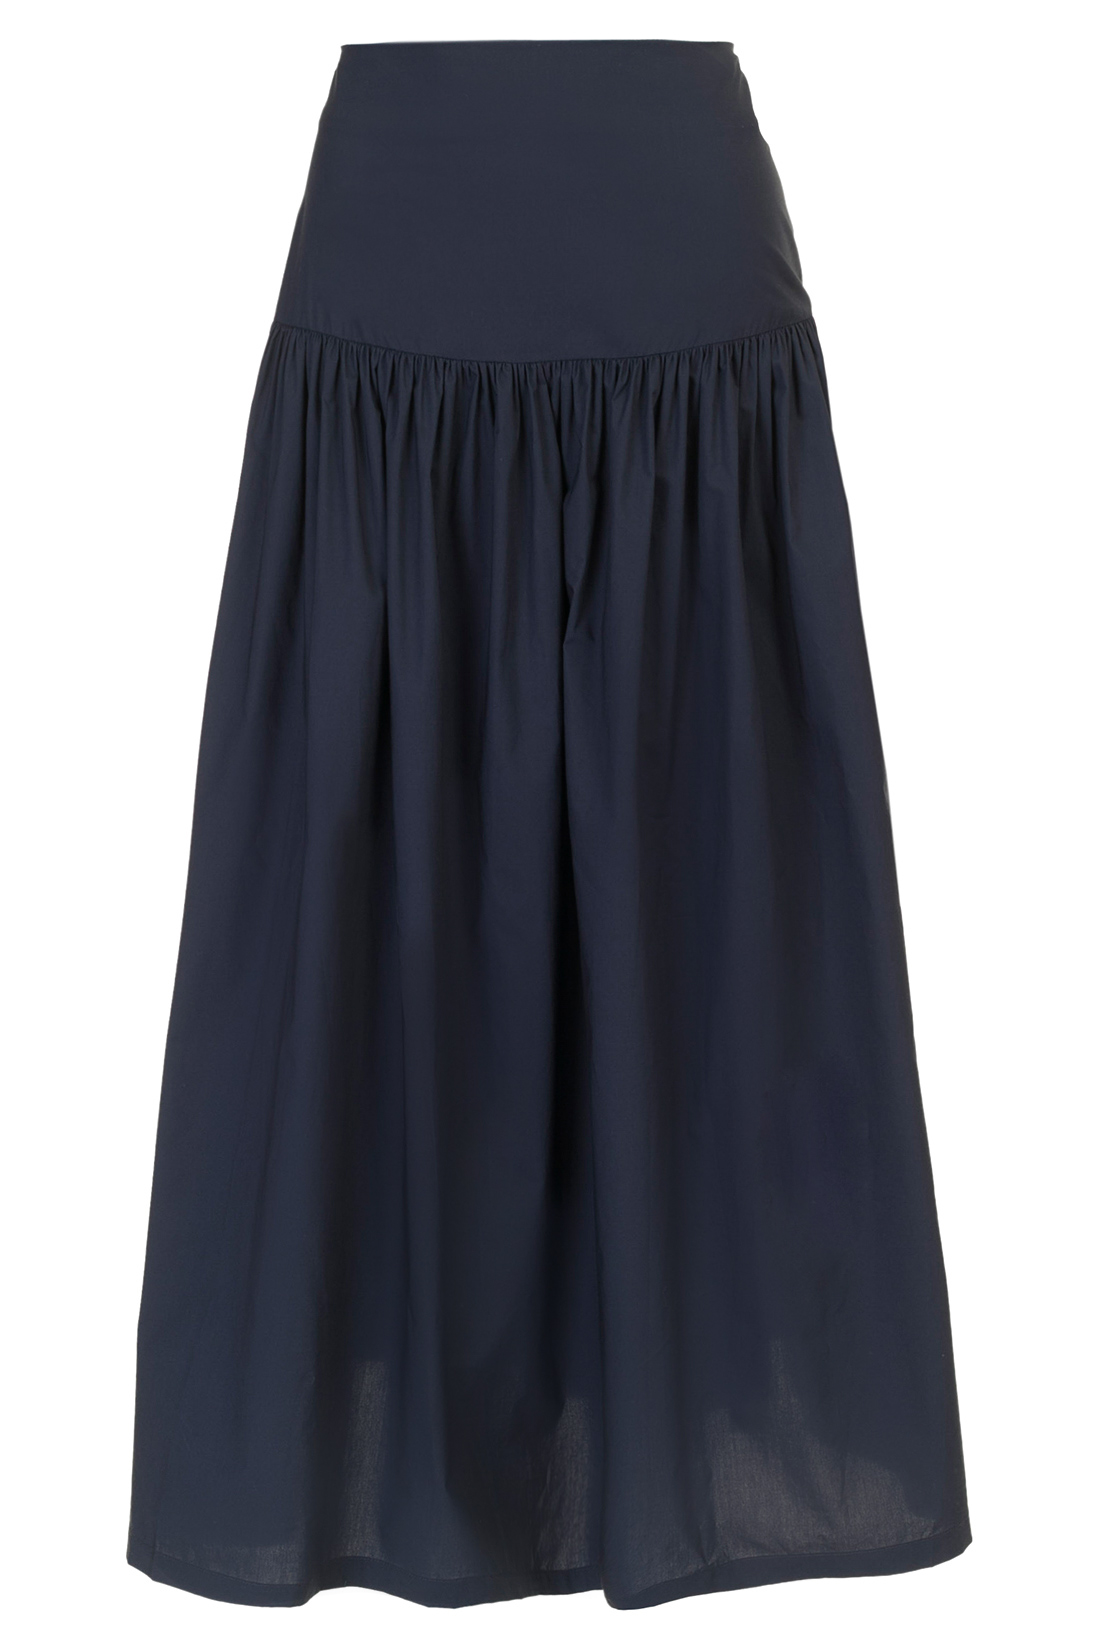 Длинная юбка с кокеткой (арт. baon B477022), размер L, цвет синий Длинная юбка с кокеткой (арт. baon B477022) - фото 4